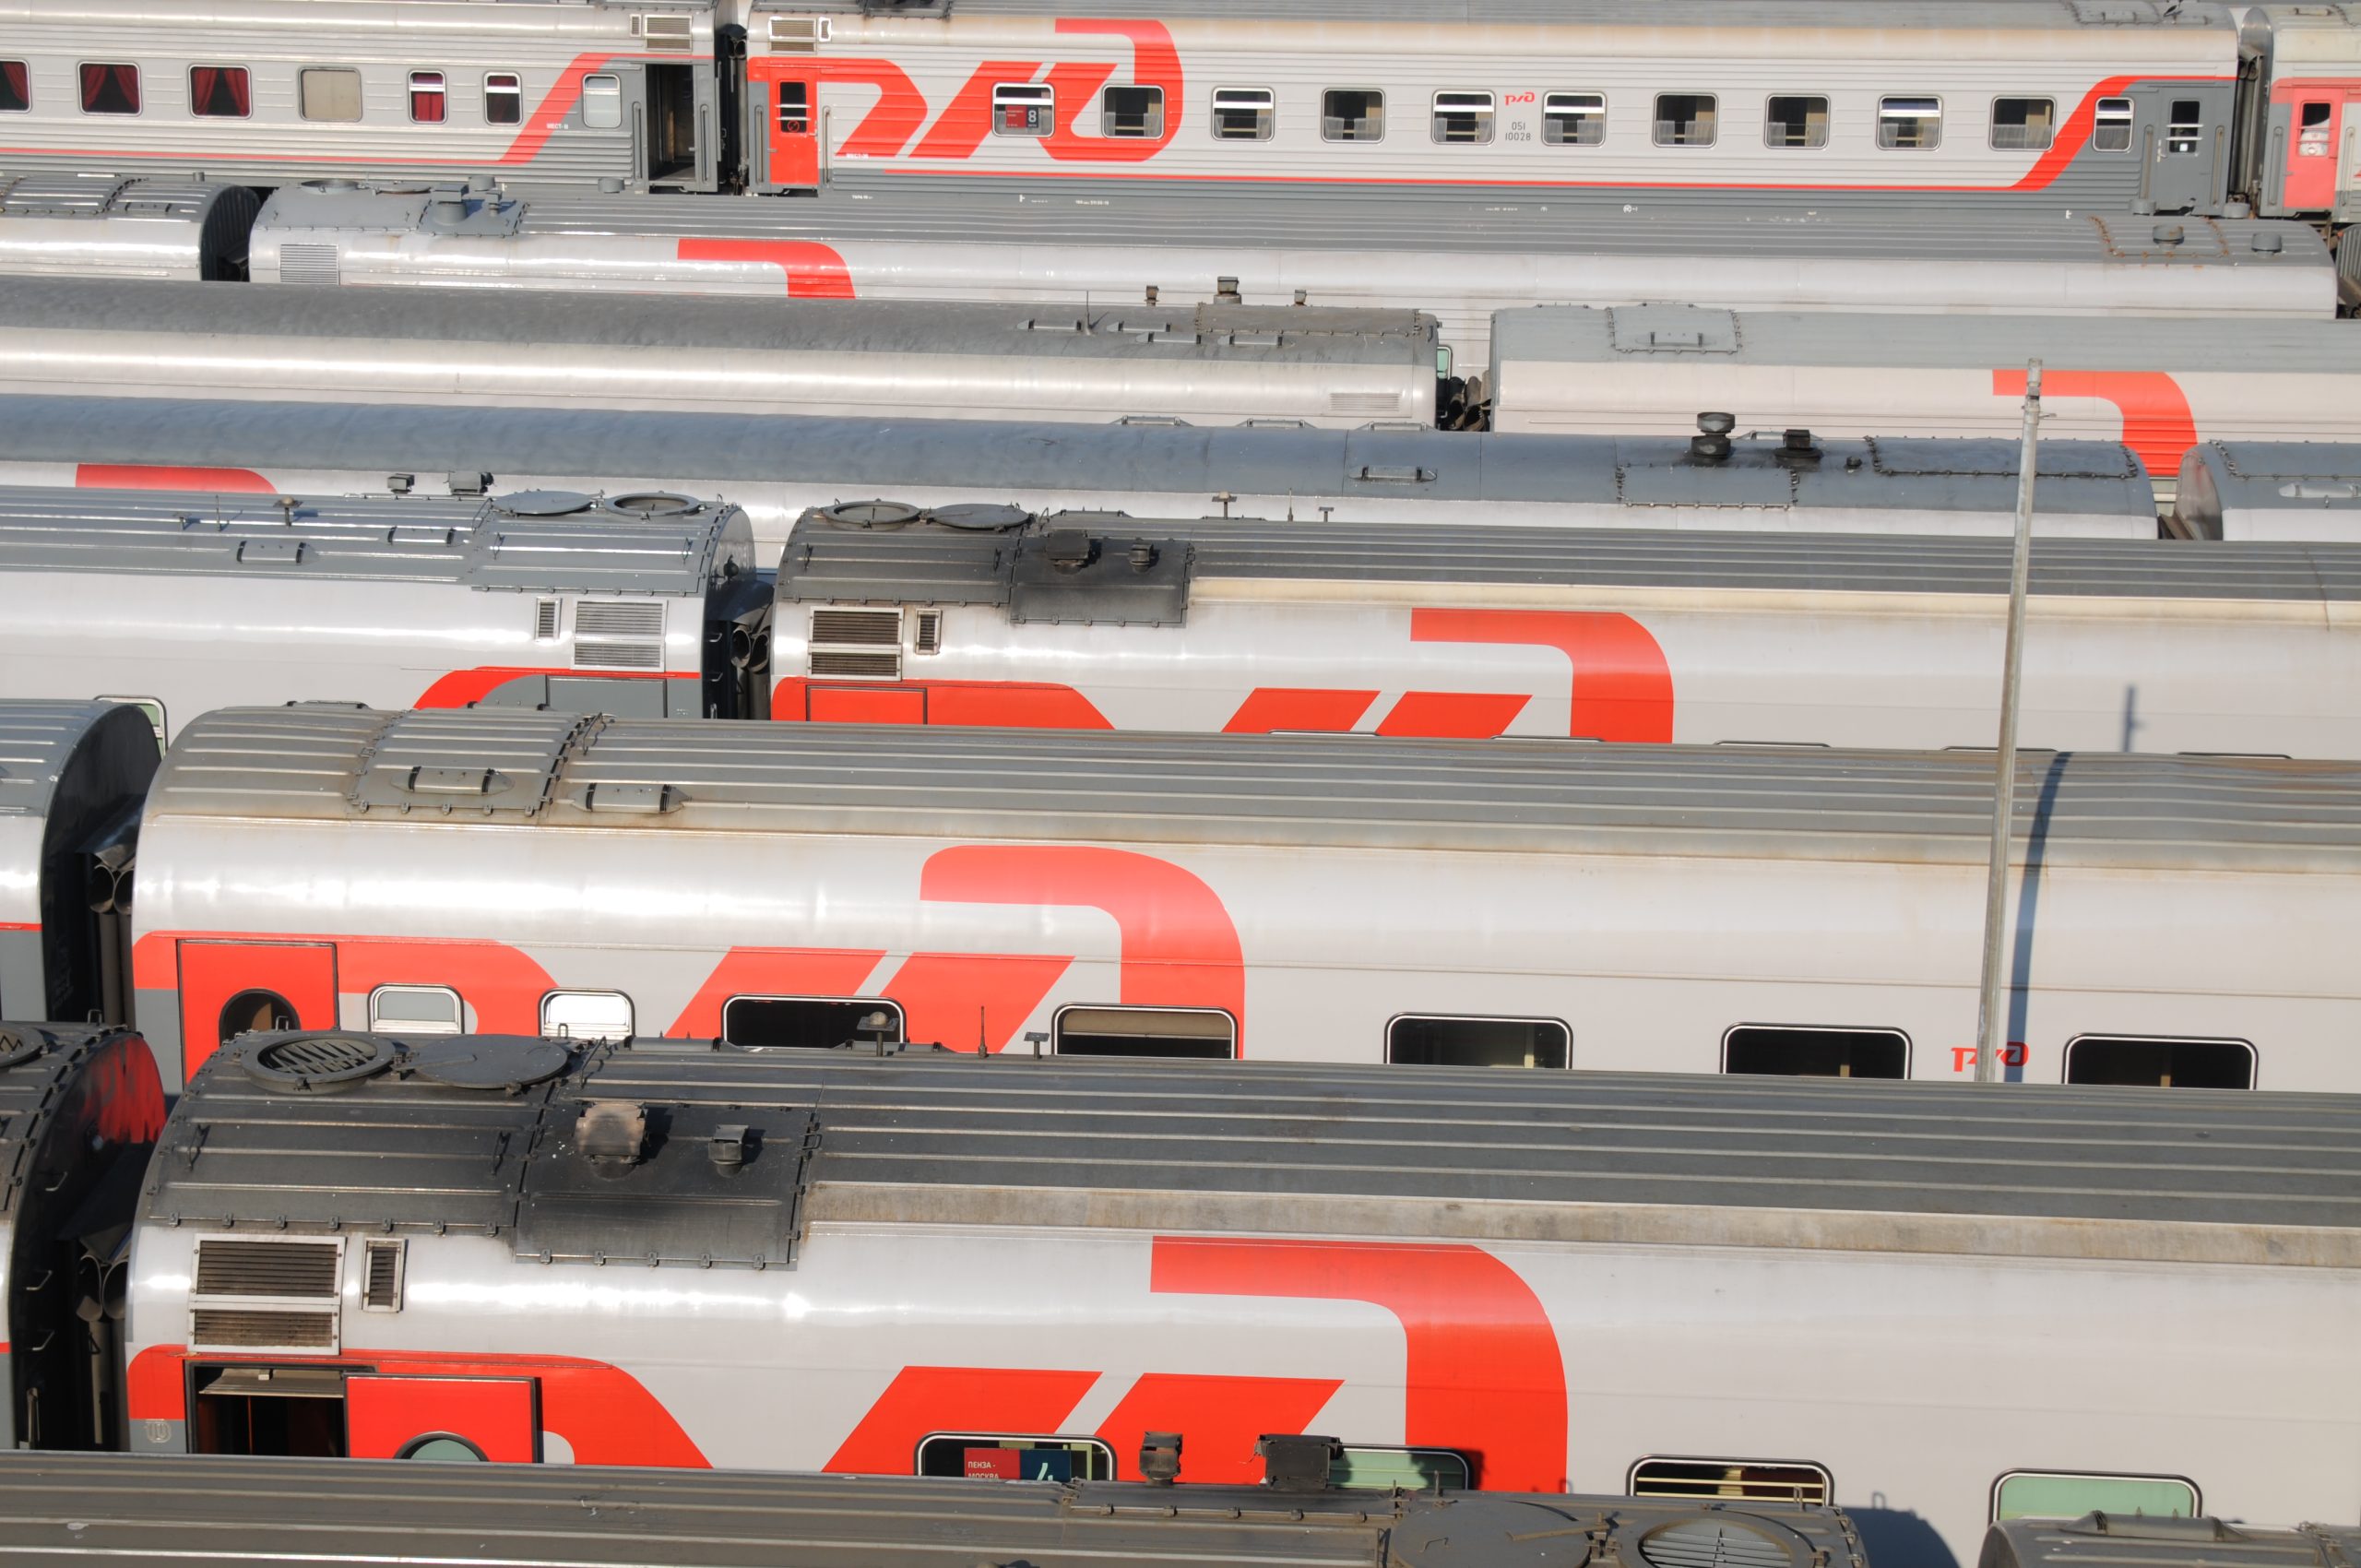 Робота для расцепки железнодорожных вагонов создадут в столичном регионе